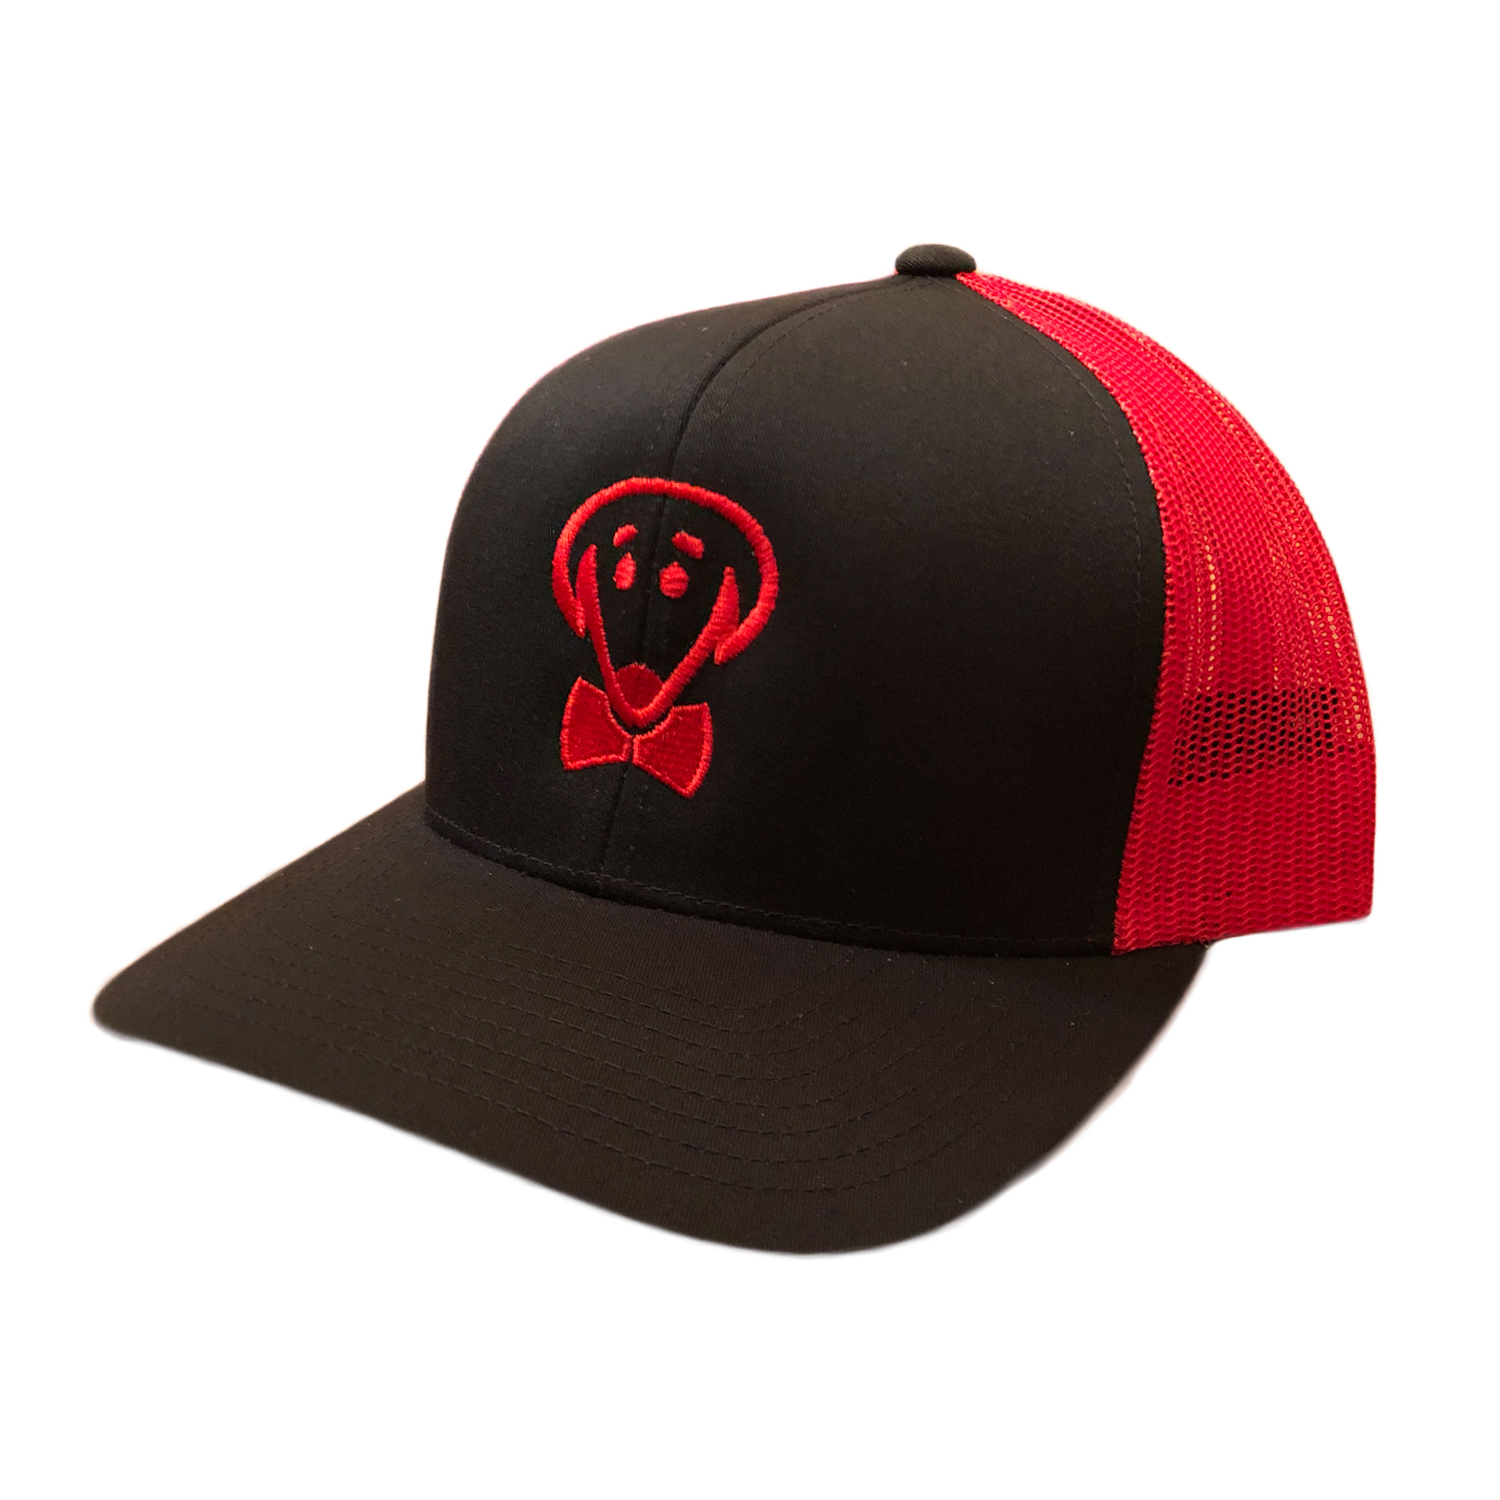 Beau Tyler - Alternate Duke baseball hat red temp2